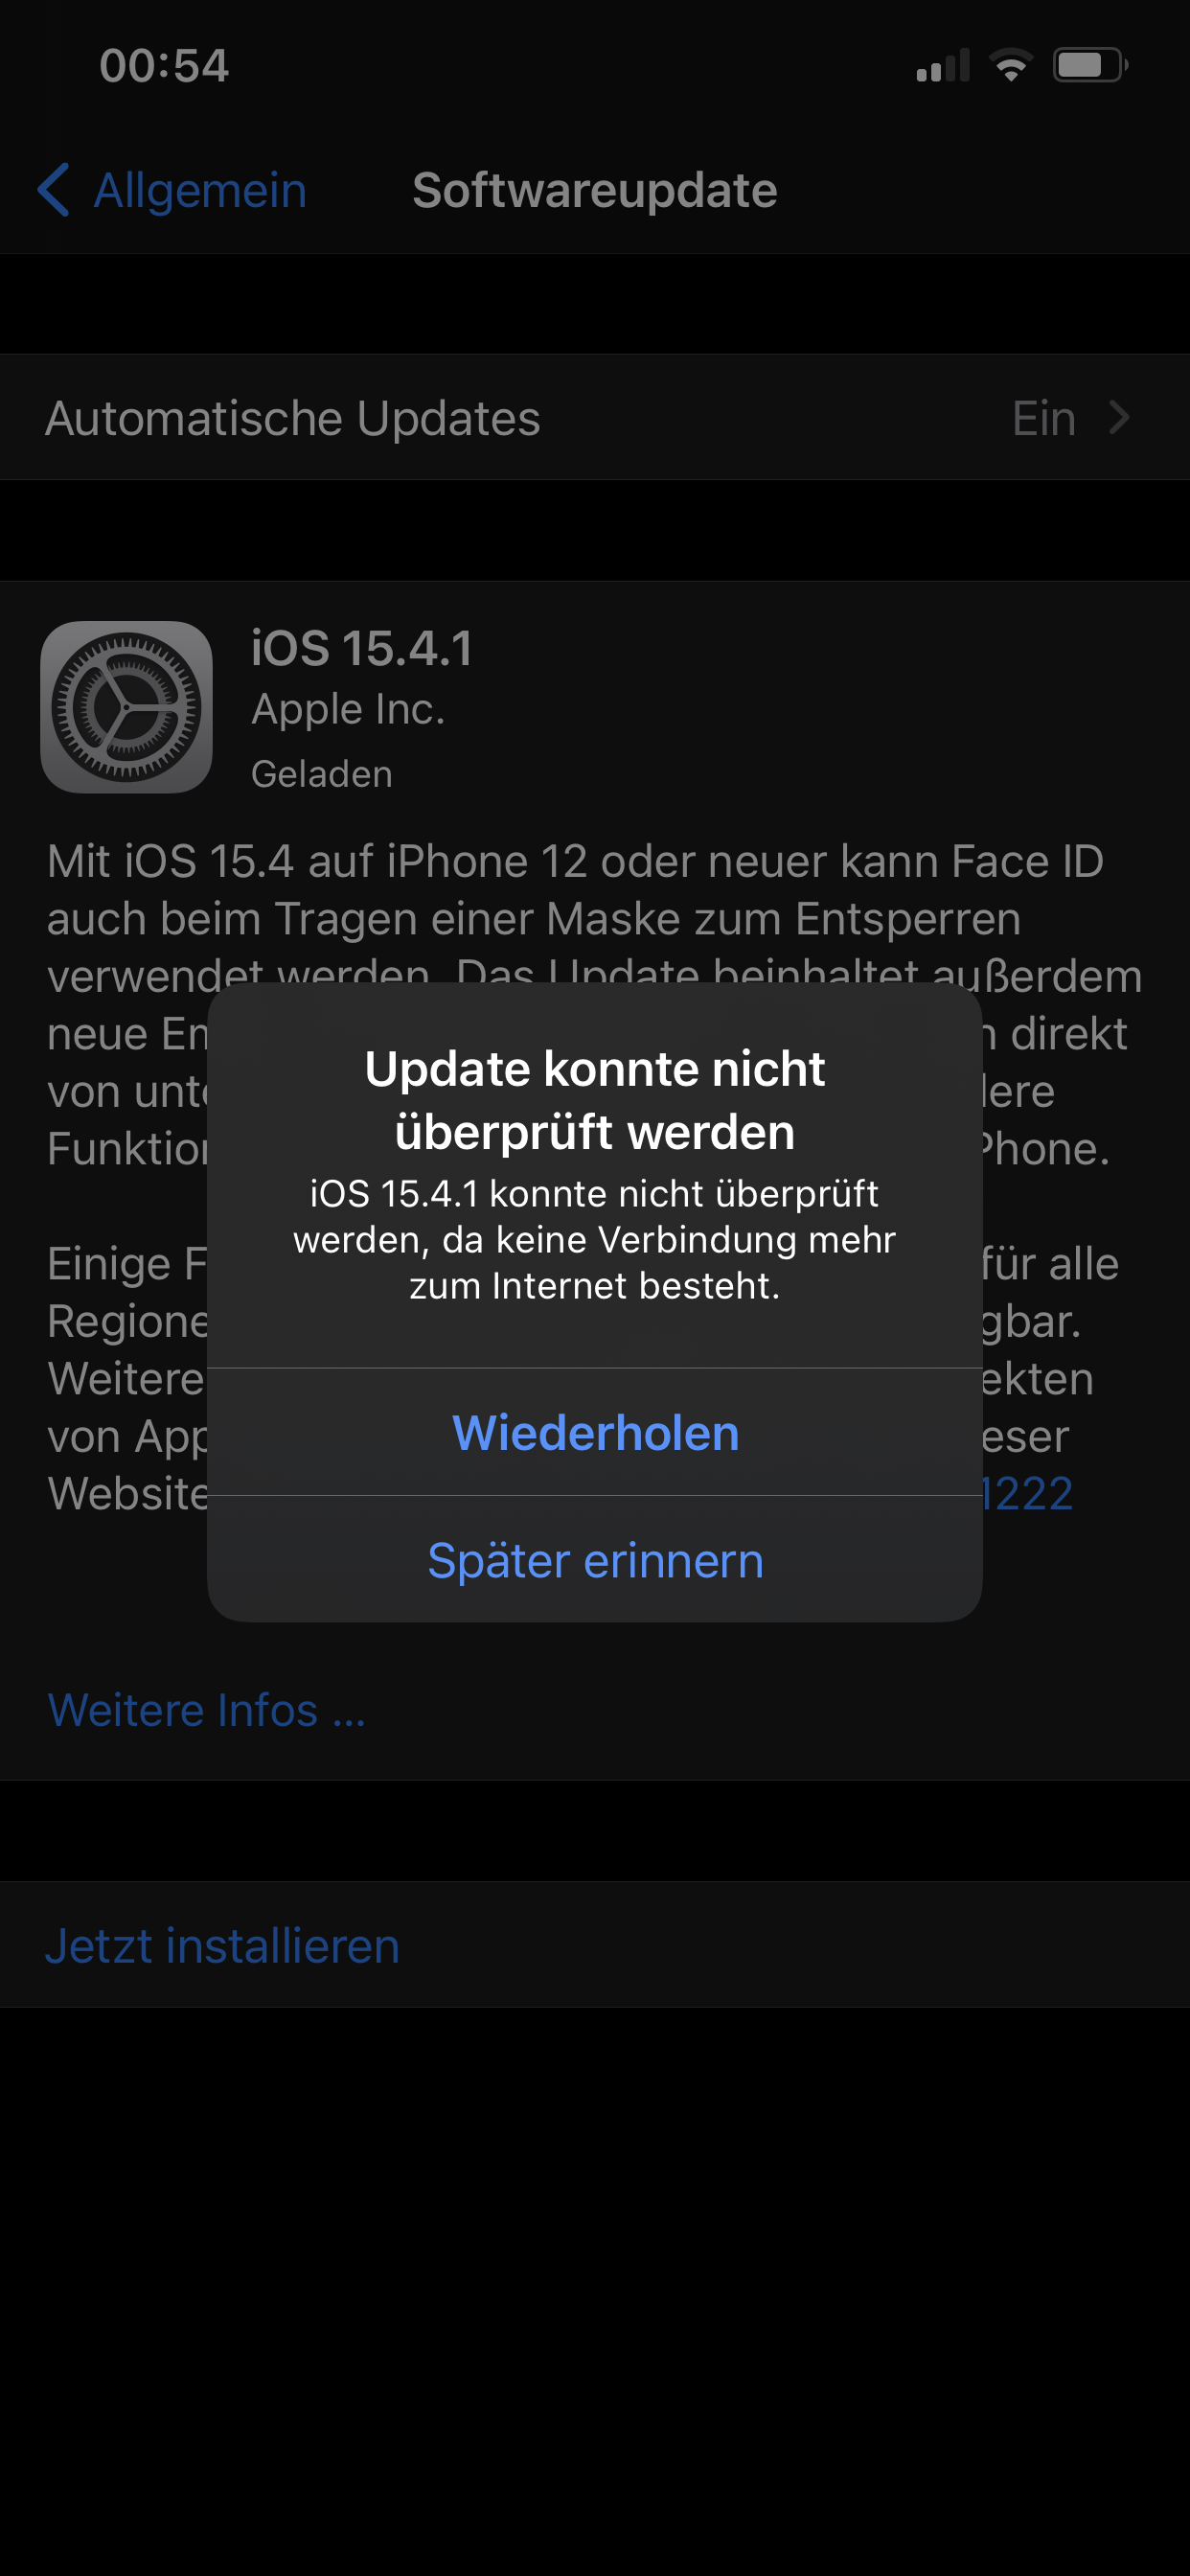 iOS 15.4.1 Update konnte nicht überprüft werden